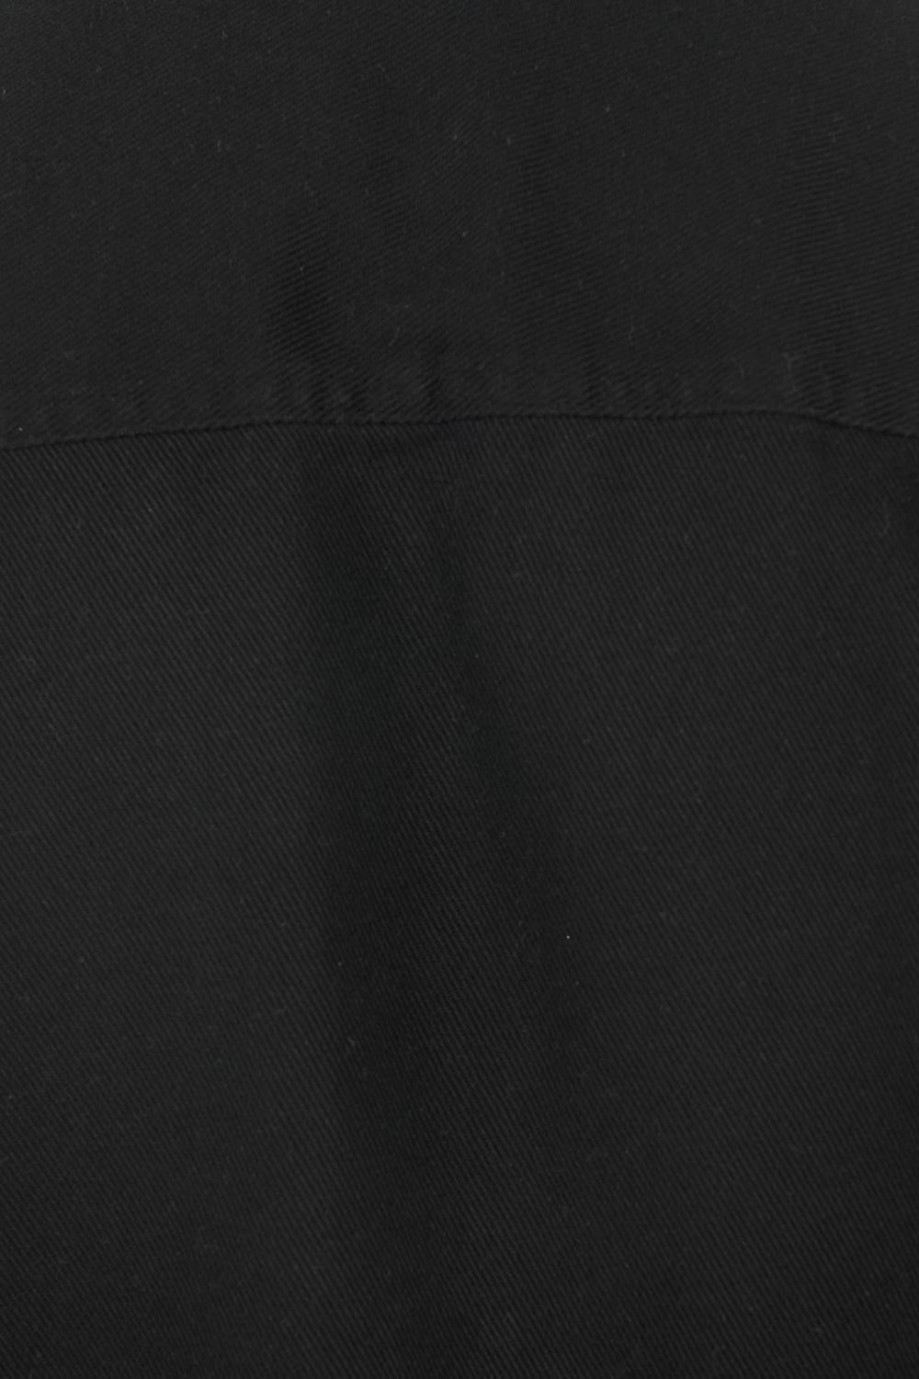 Sobrecamisa manga larga unicolor con cuello sport collar y bolsillos